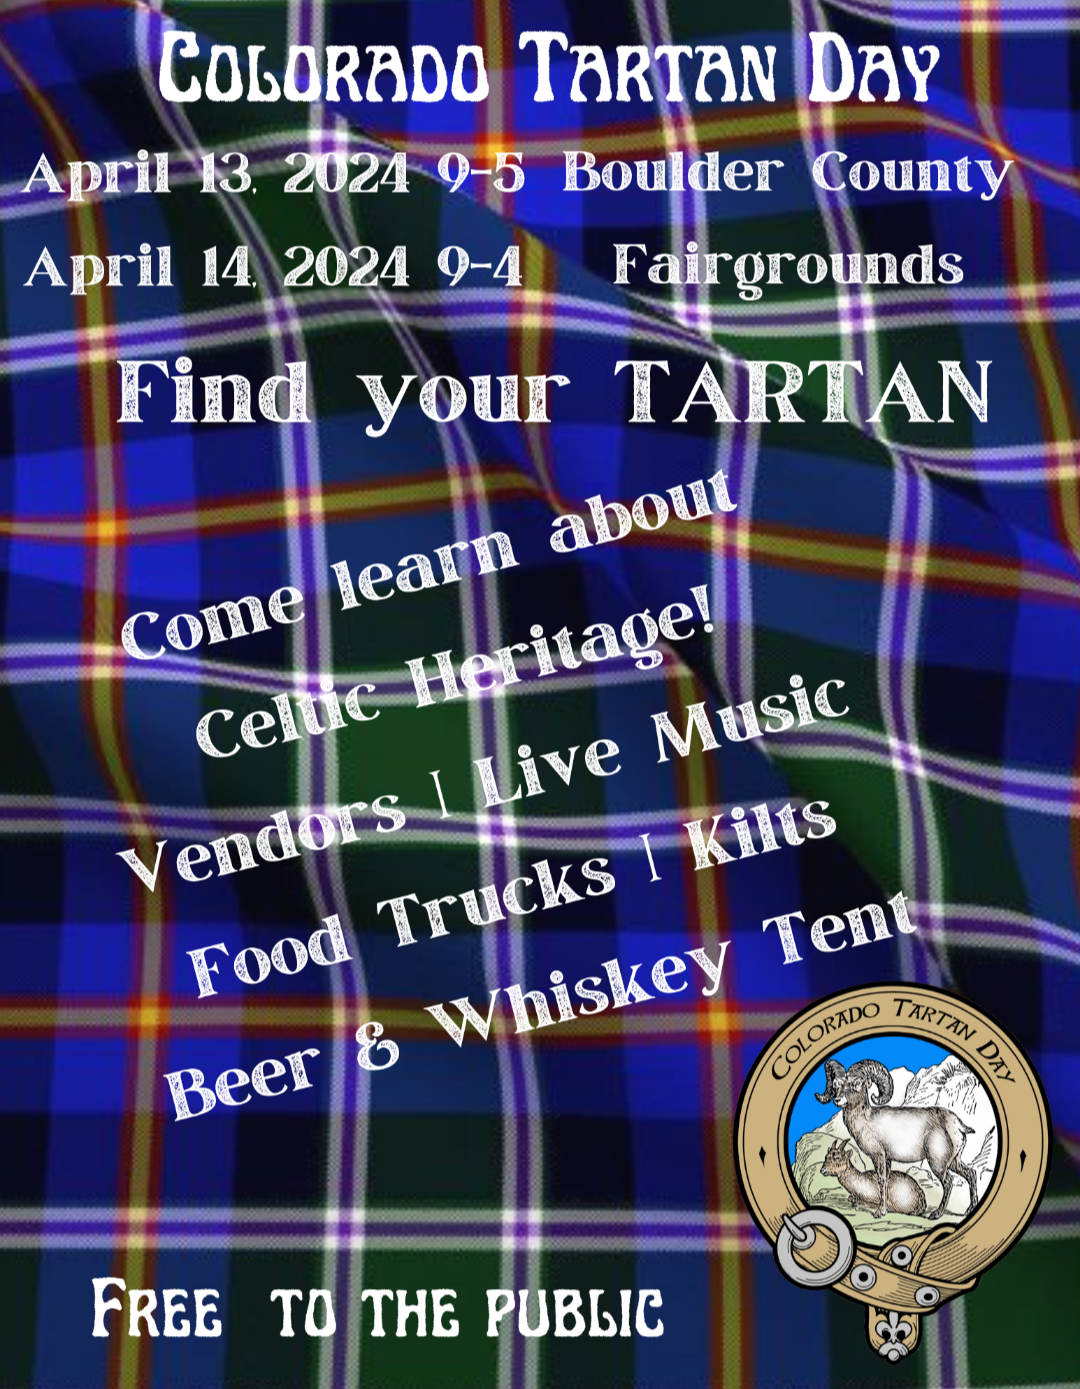 Colorado Tartan Day Fest April 13 & 14 2024, Boulder Co Fairgrounds…